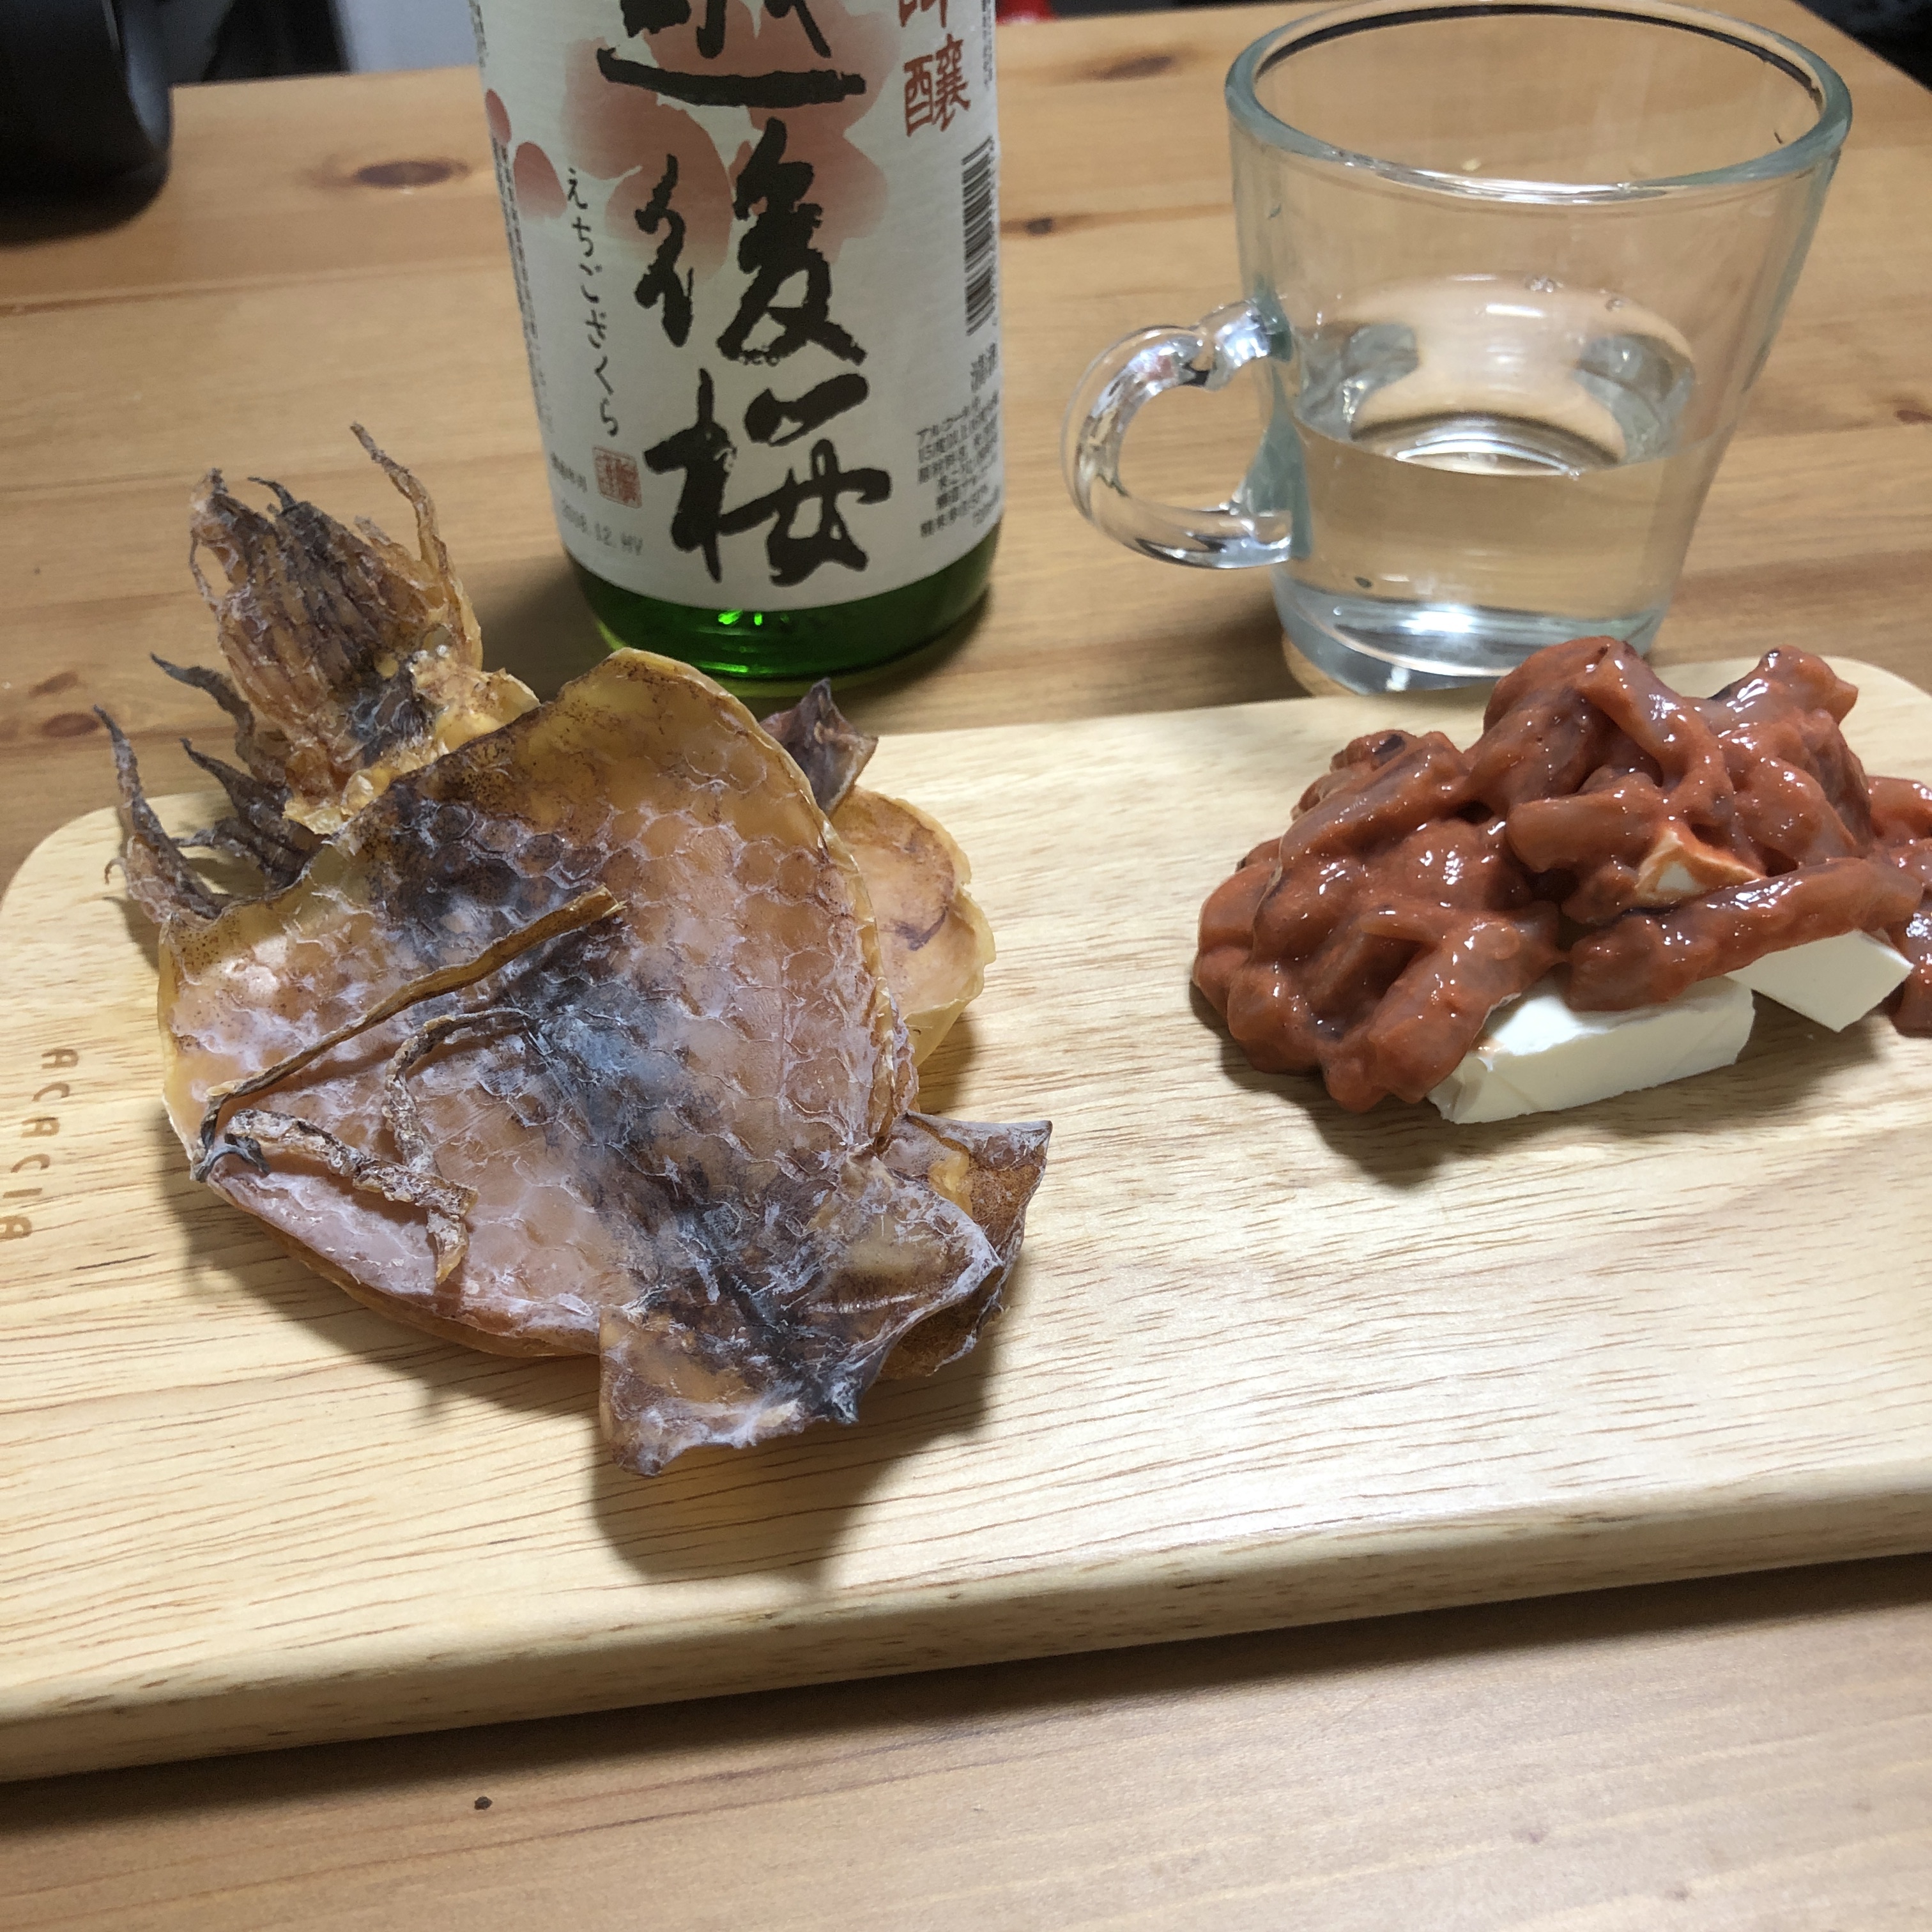 kiriに塩辛乗せるとすごい美味しいですよ。日本酒に合いますのでぜひに！